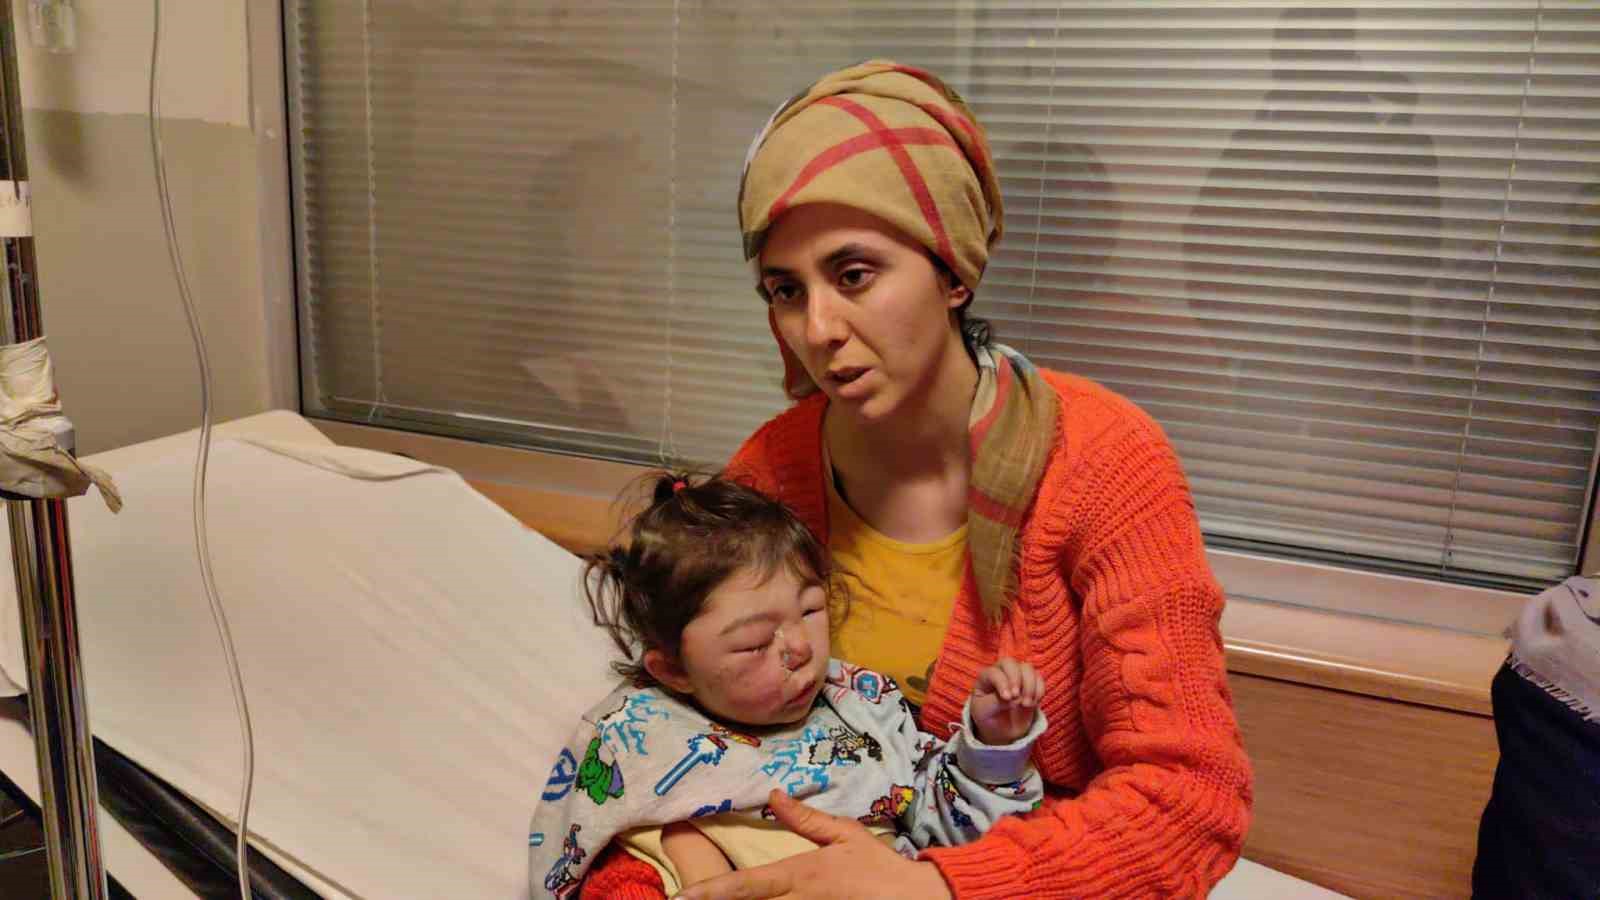 Gaziantep’te enkazdan kurtarılan anne ve 2 çocuğu Bursa’da tedavi altına alındı